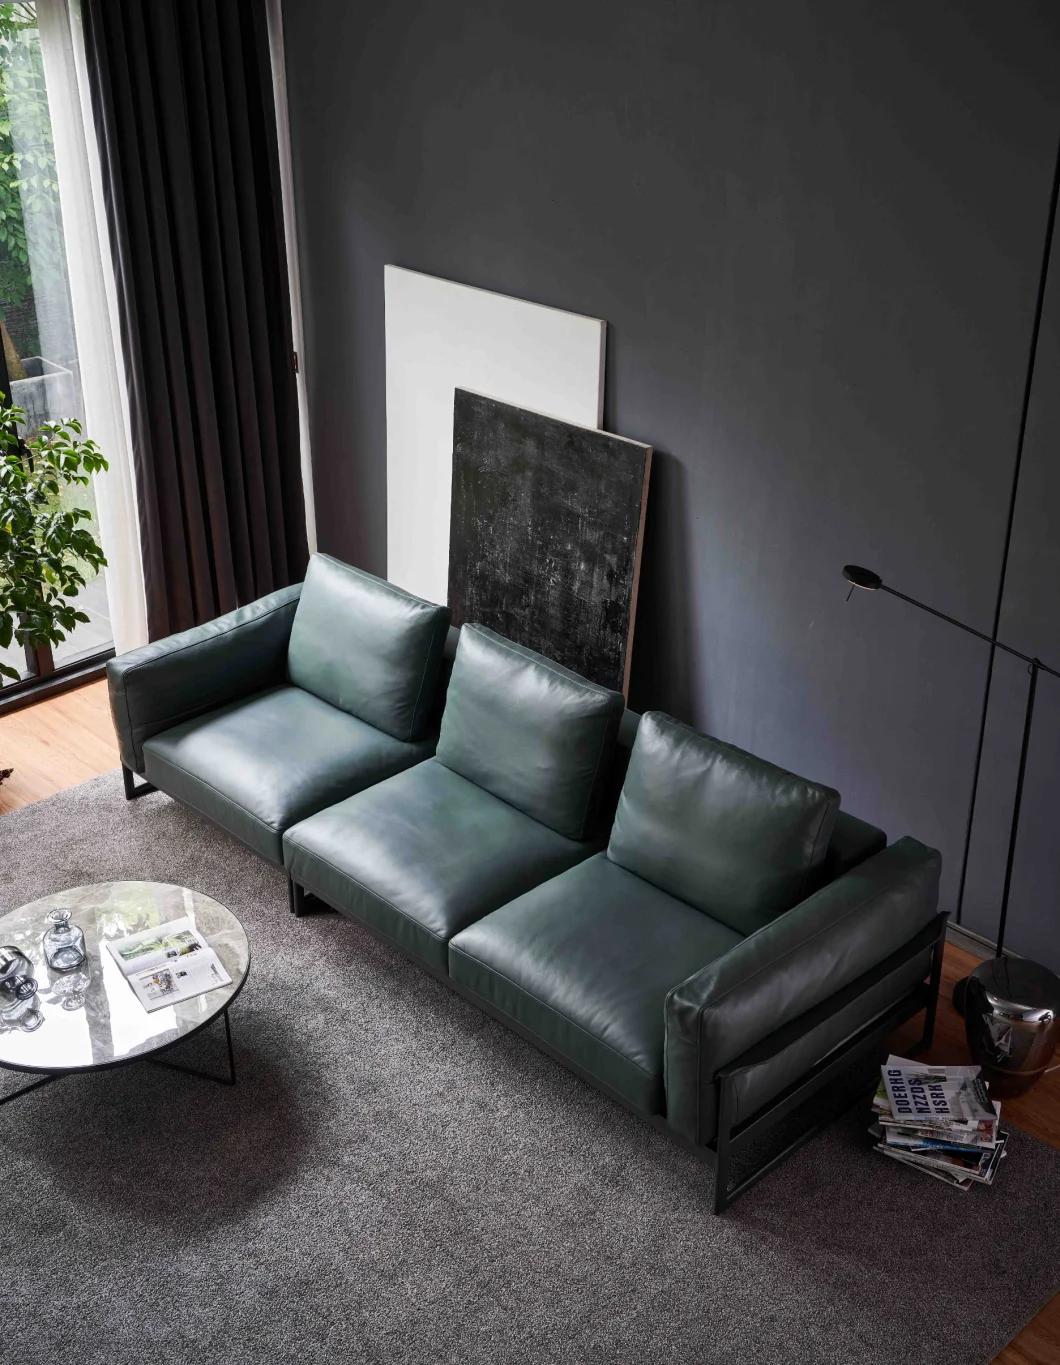 Home Furniture Sofa Design Sofa Leisure Sofa Leather Sofa GS9051